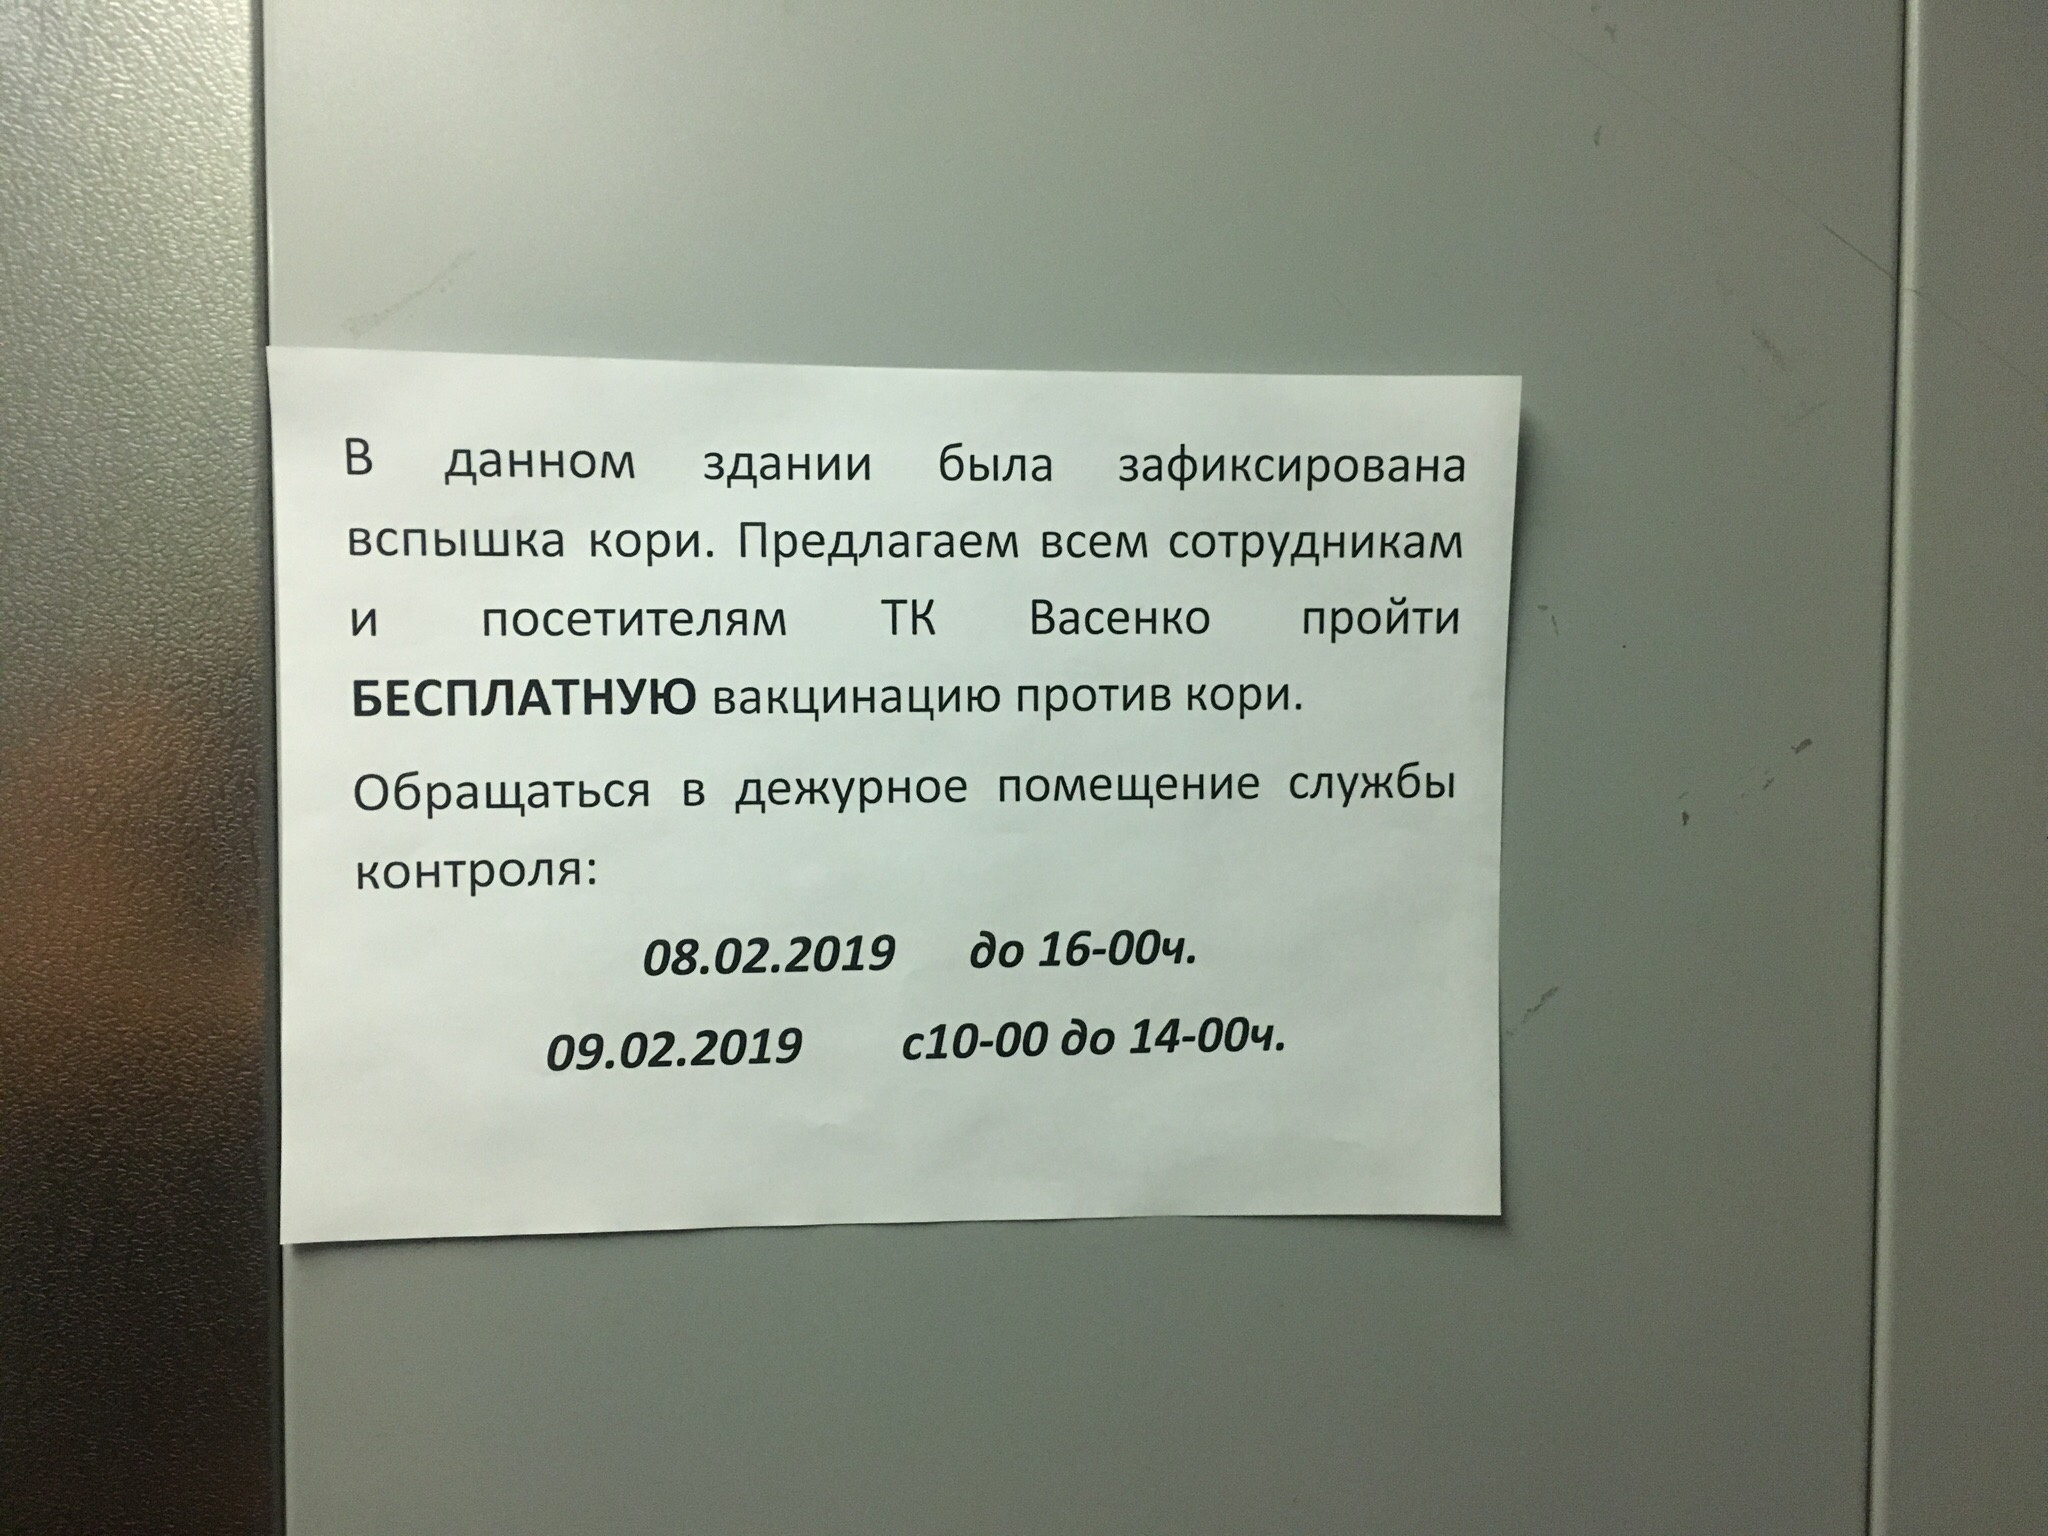 Такое объявление увидели посетители торгово-офисного центра на Васенко, 96